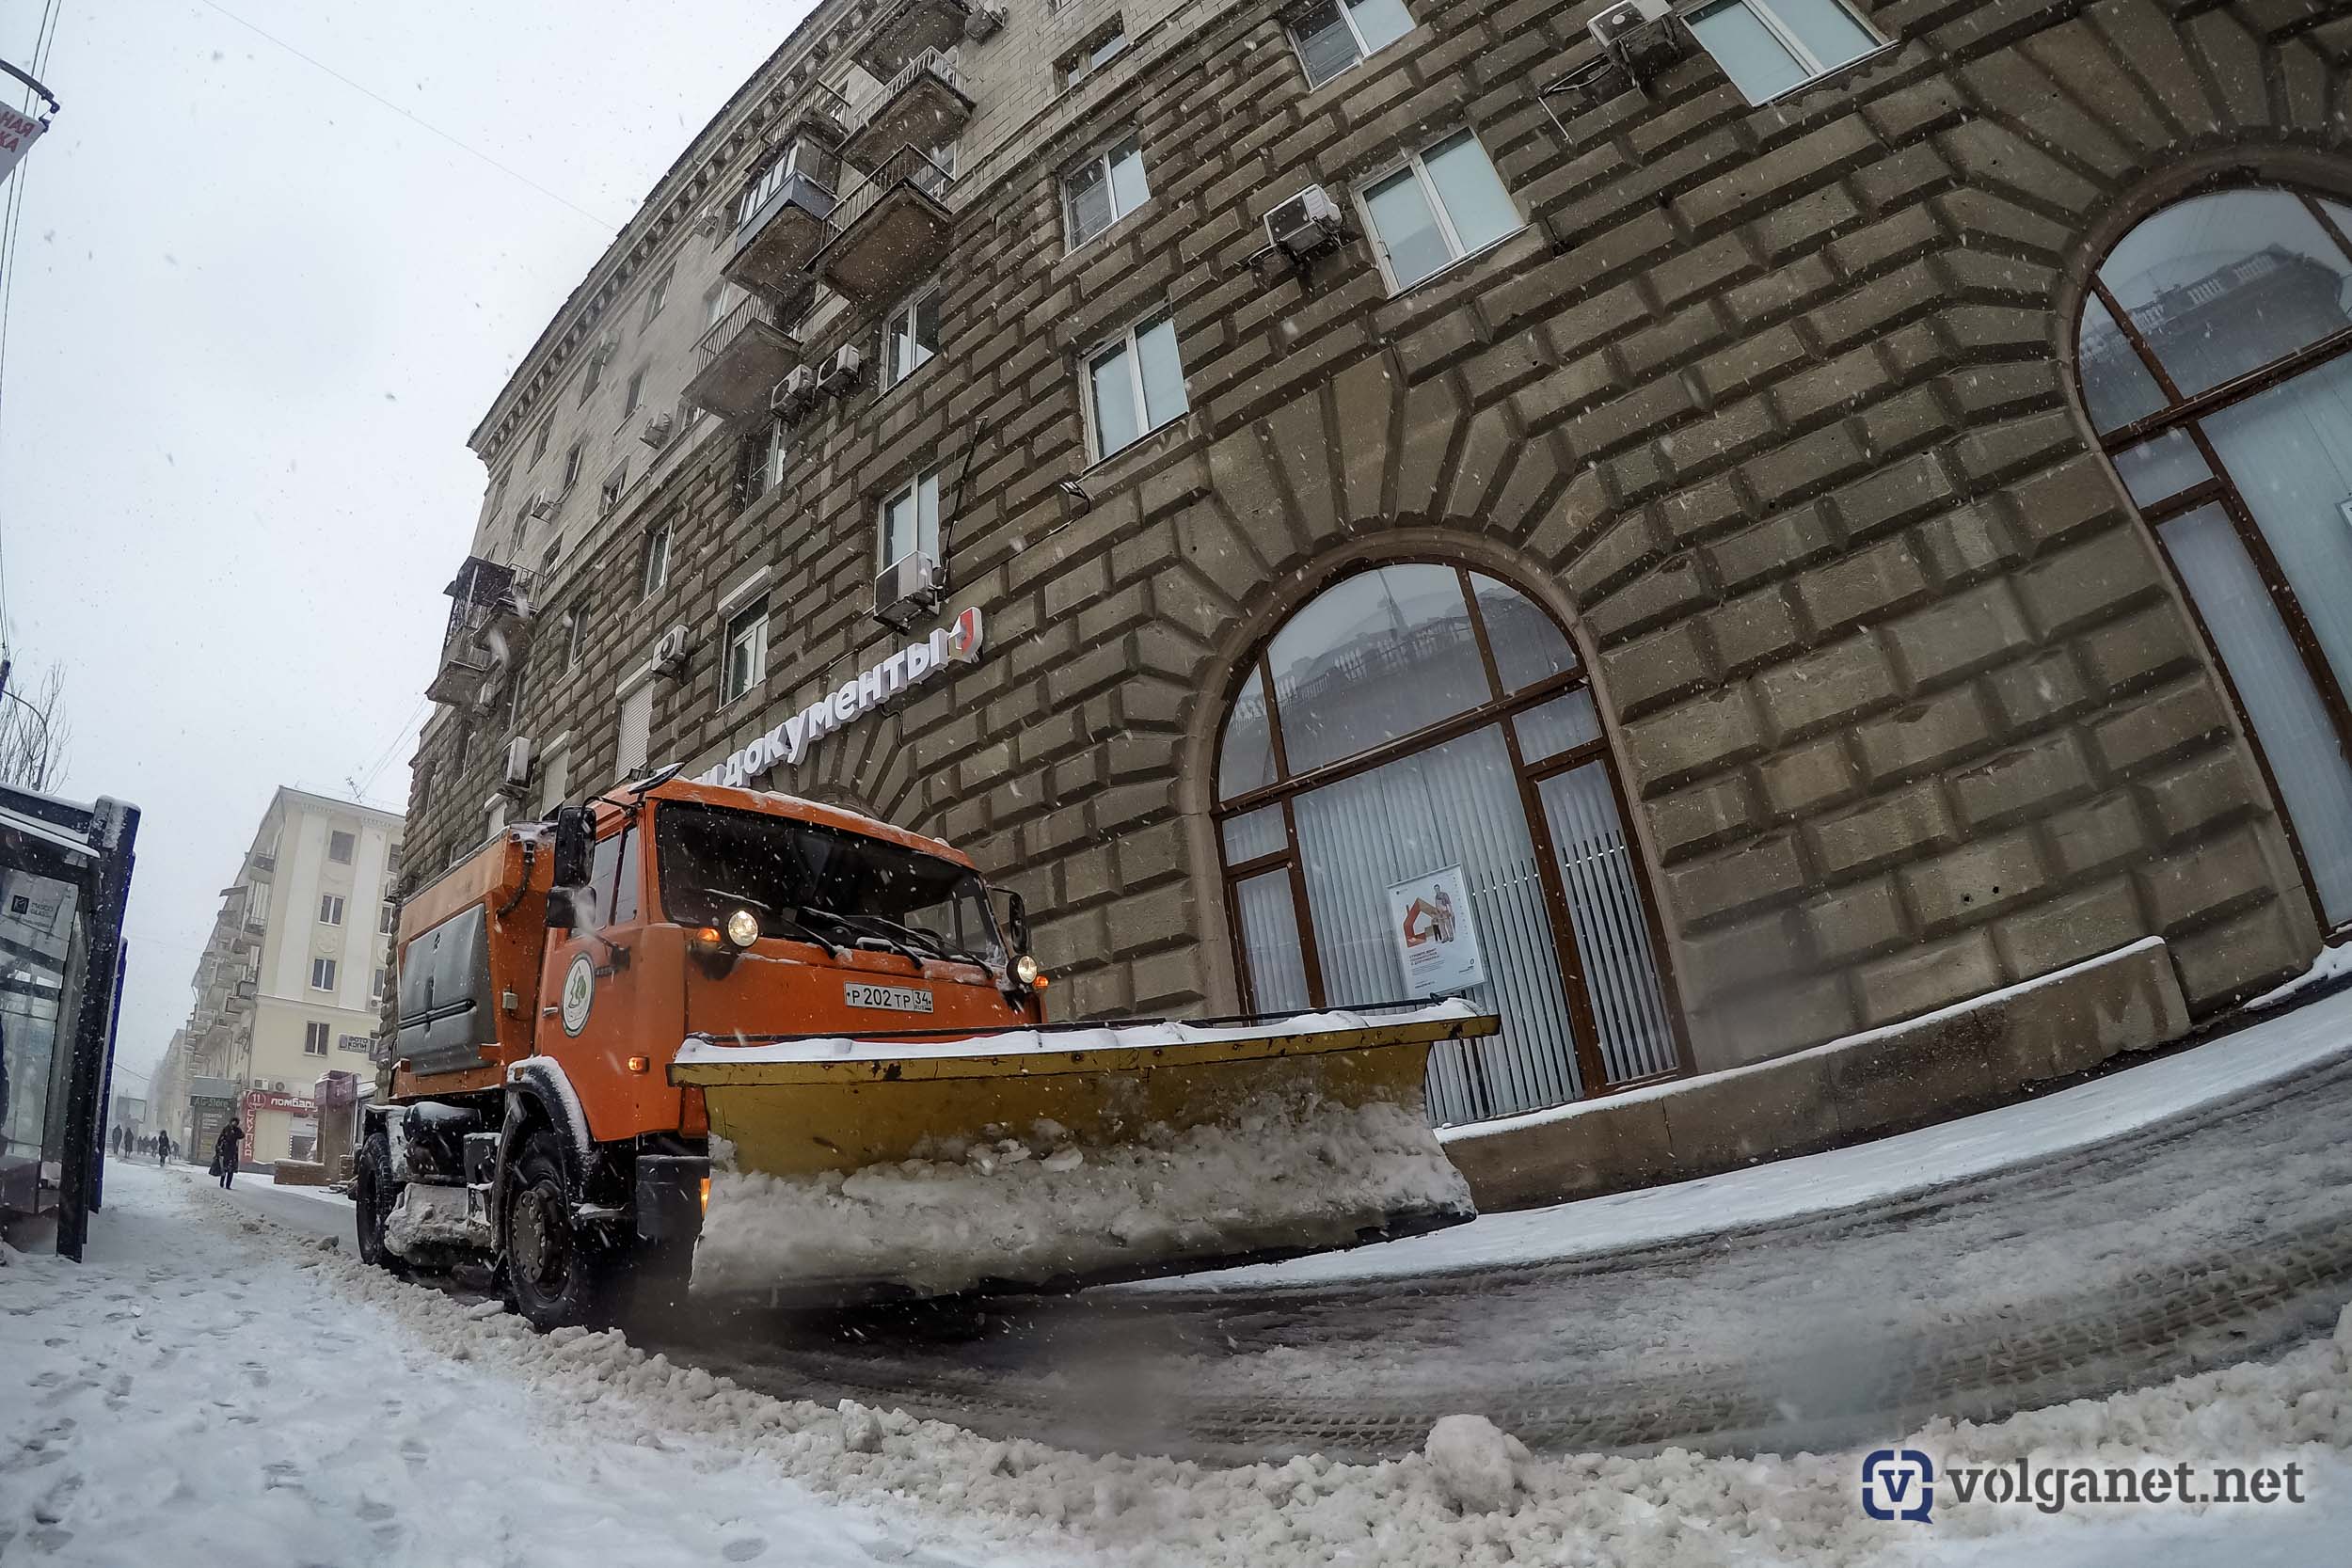 Волганет вход. Снег в Волгограде сегодня. Снег в Волгограде. Волгоград в снегу фото. Снежный Волгоград фото.